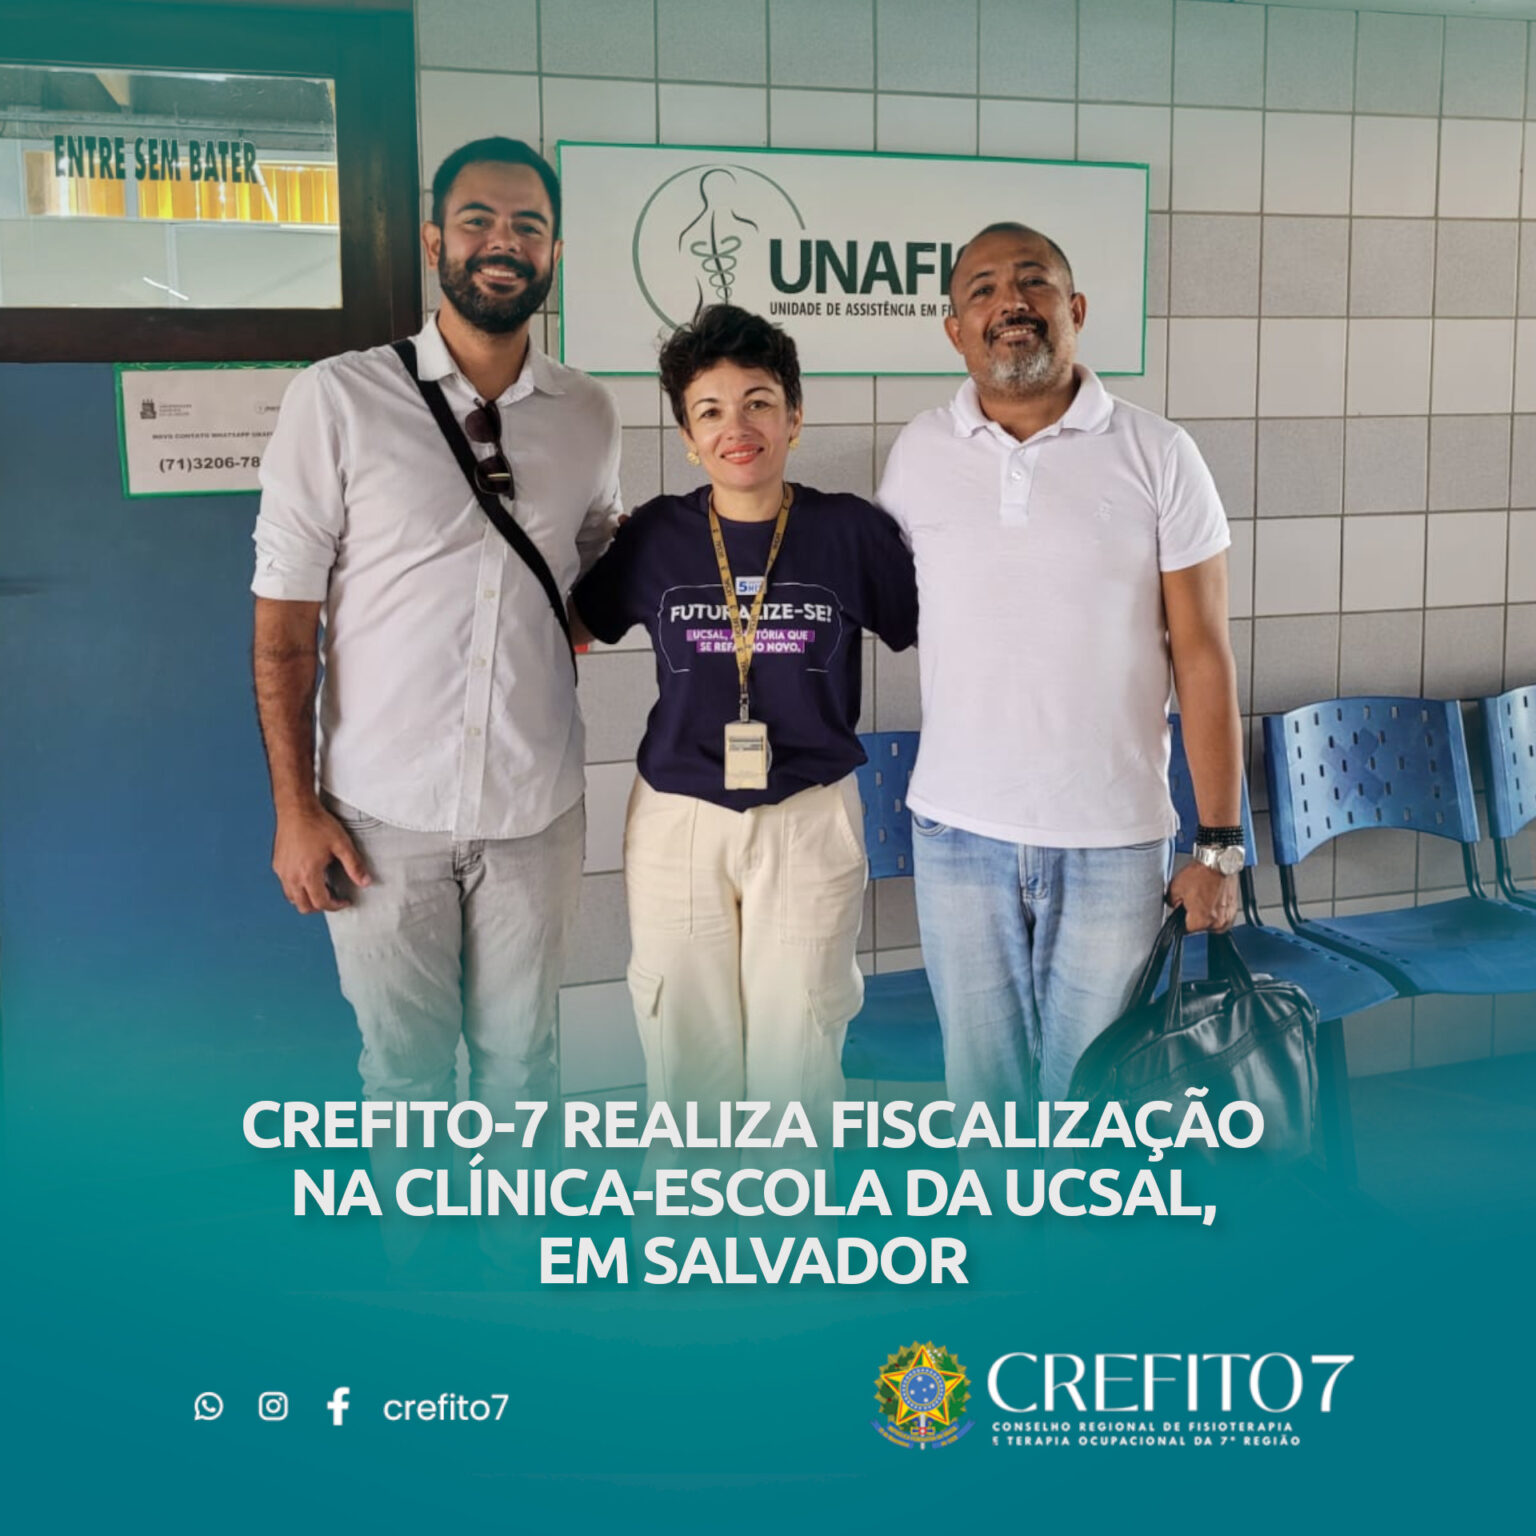 CREFITO-7 REALIZA FISCALIZAÇÃO NA CLÍNICA-ESCOLA DA UCSAL